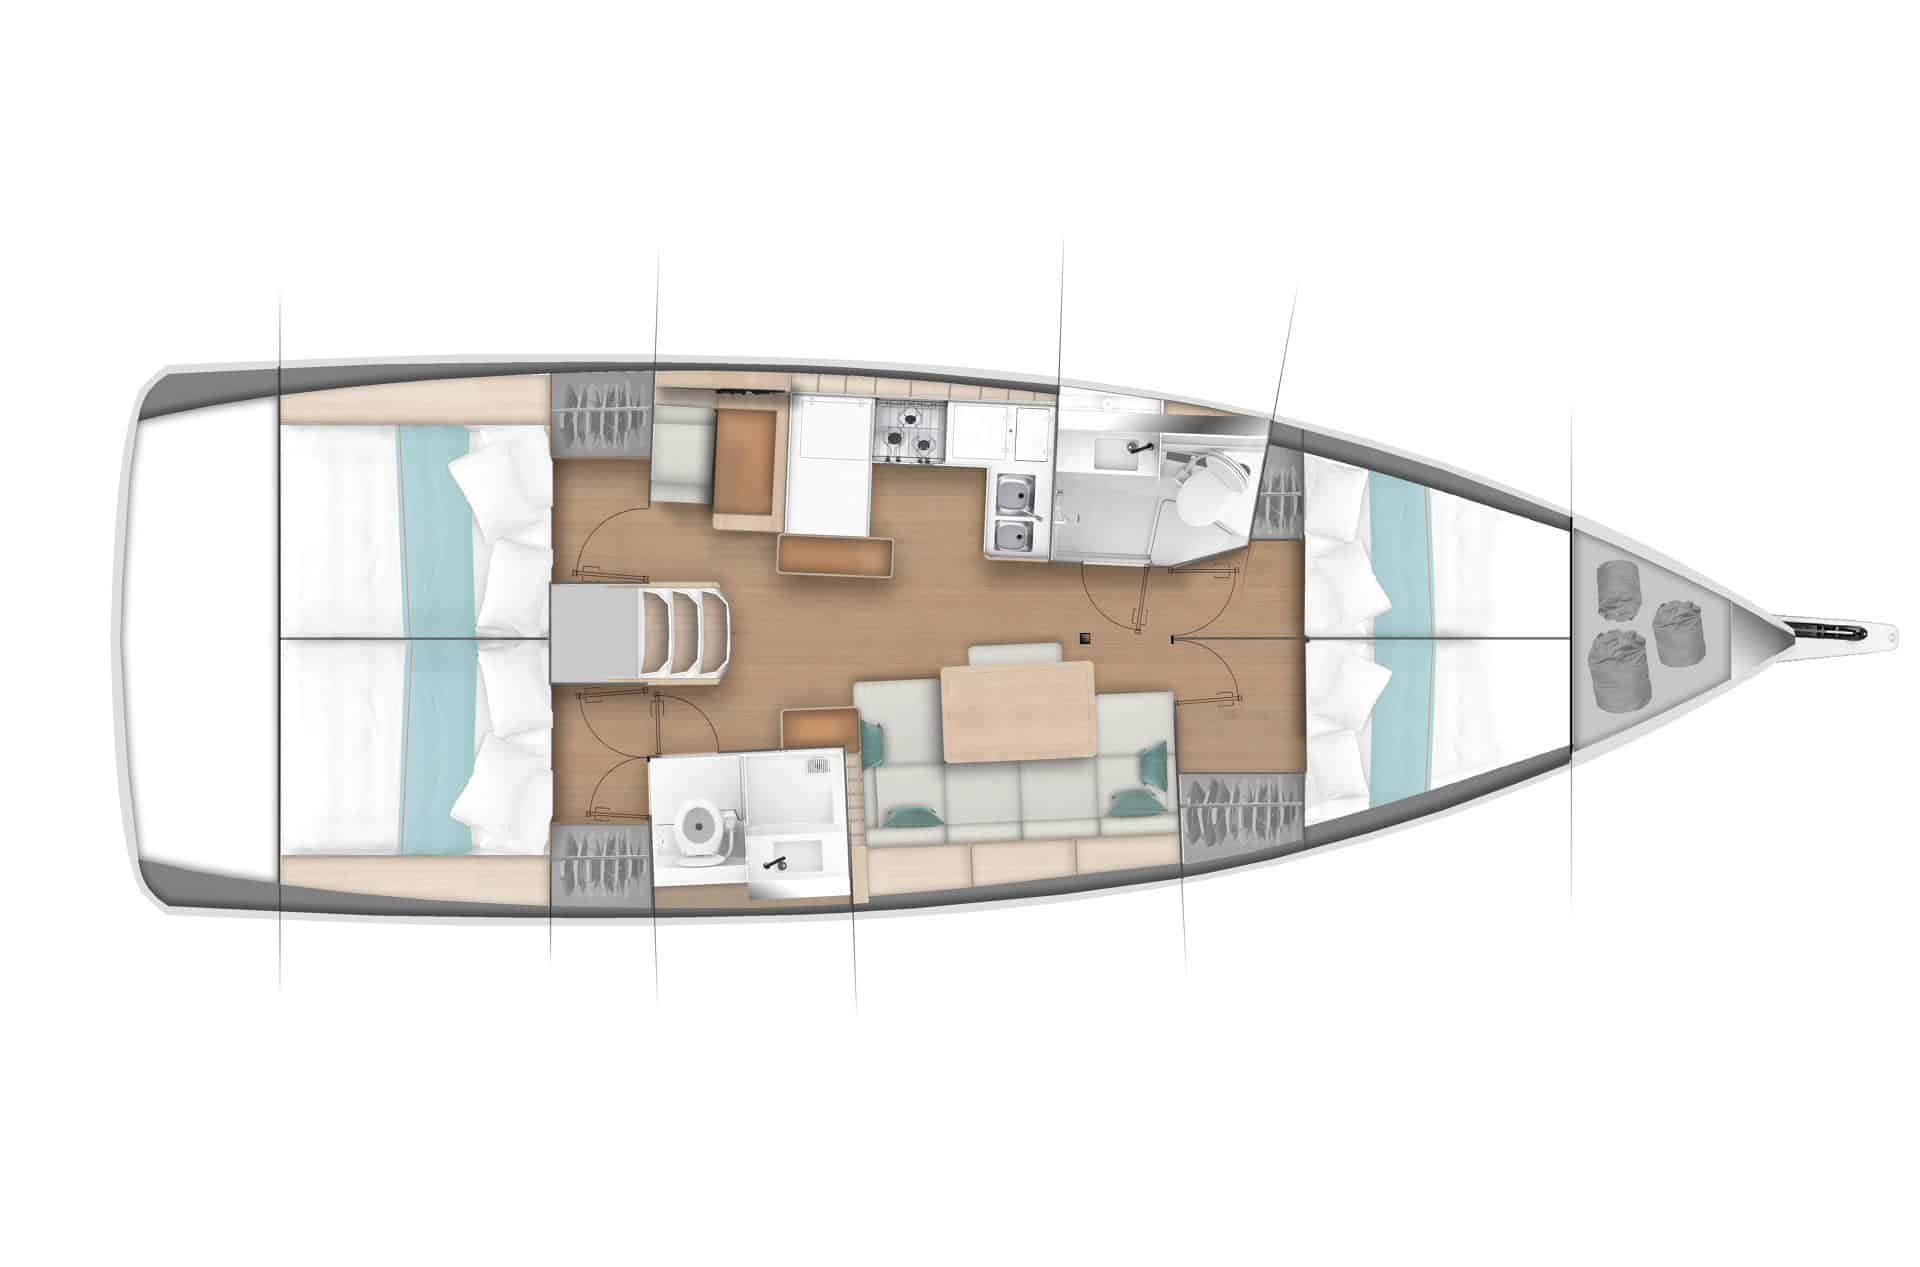 Draufsicht auf den Grundriss einer Segelurlaub-Yacht, die die Aufteilung einschließlich Wohnbereich, Schlafzimmer, Küche und Badezimmer zeigt, alles übersichtlich auf dem schmalen Raum des Bootes angeordnet.